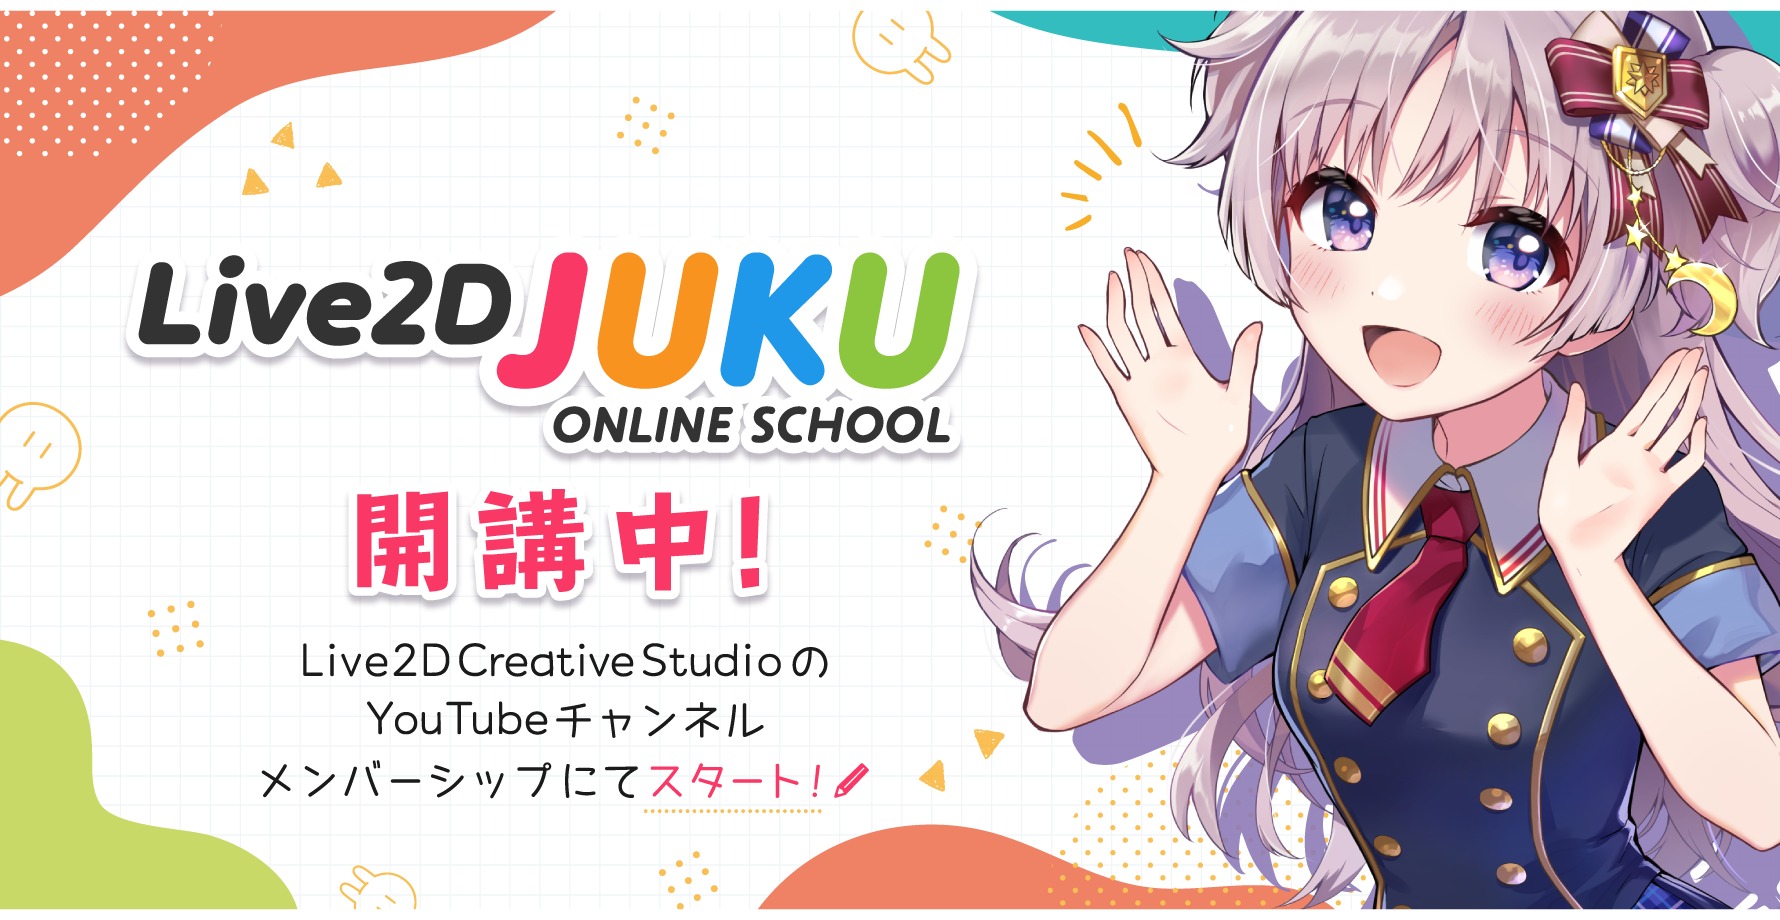 Live2D 公式オンライン講座 『Live2D JUKU』